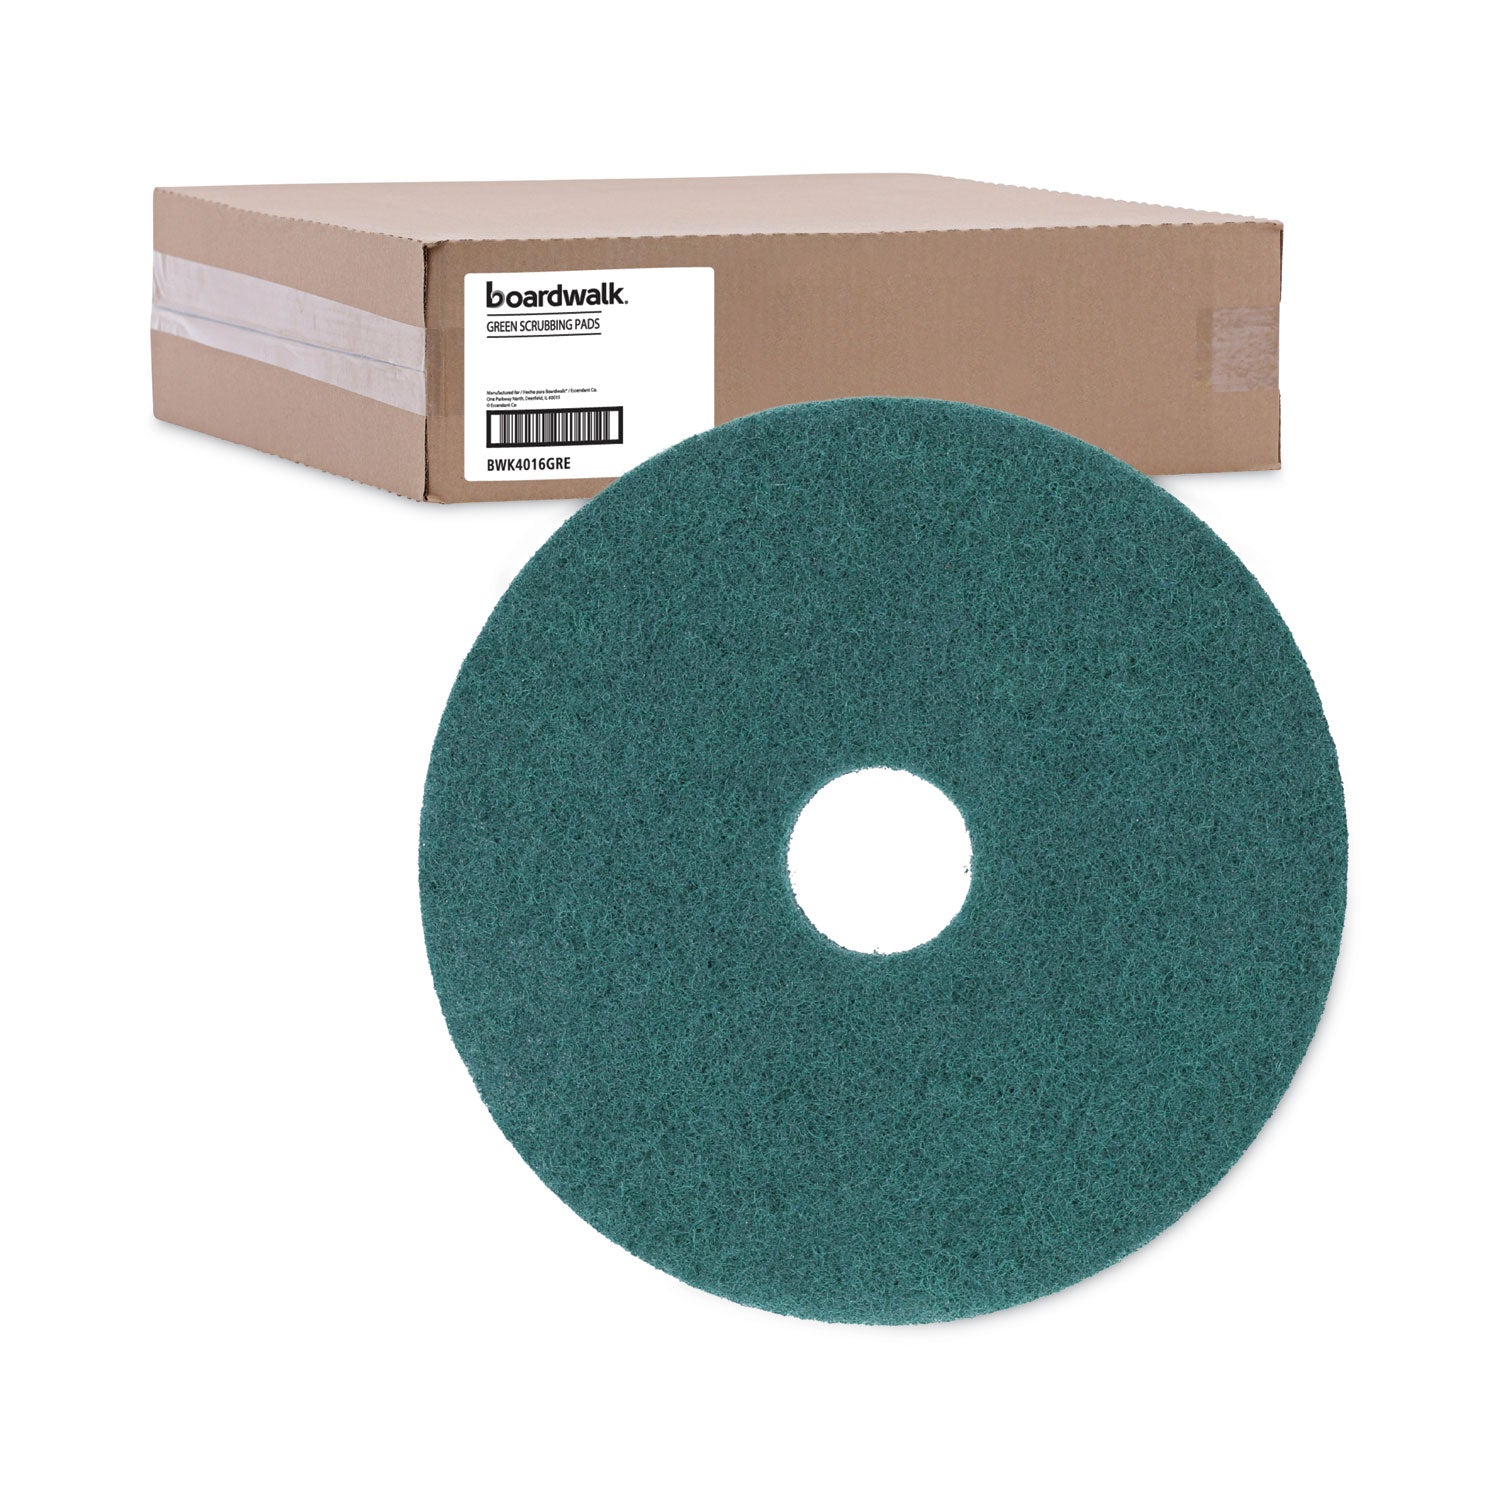 heavy-duty-scrubbing-floor-pads-16-diameter-green-5-carton_bwk4016gre - 5